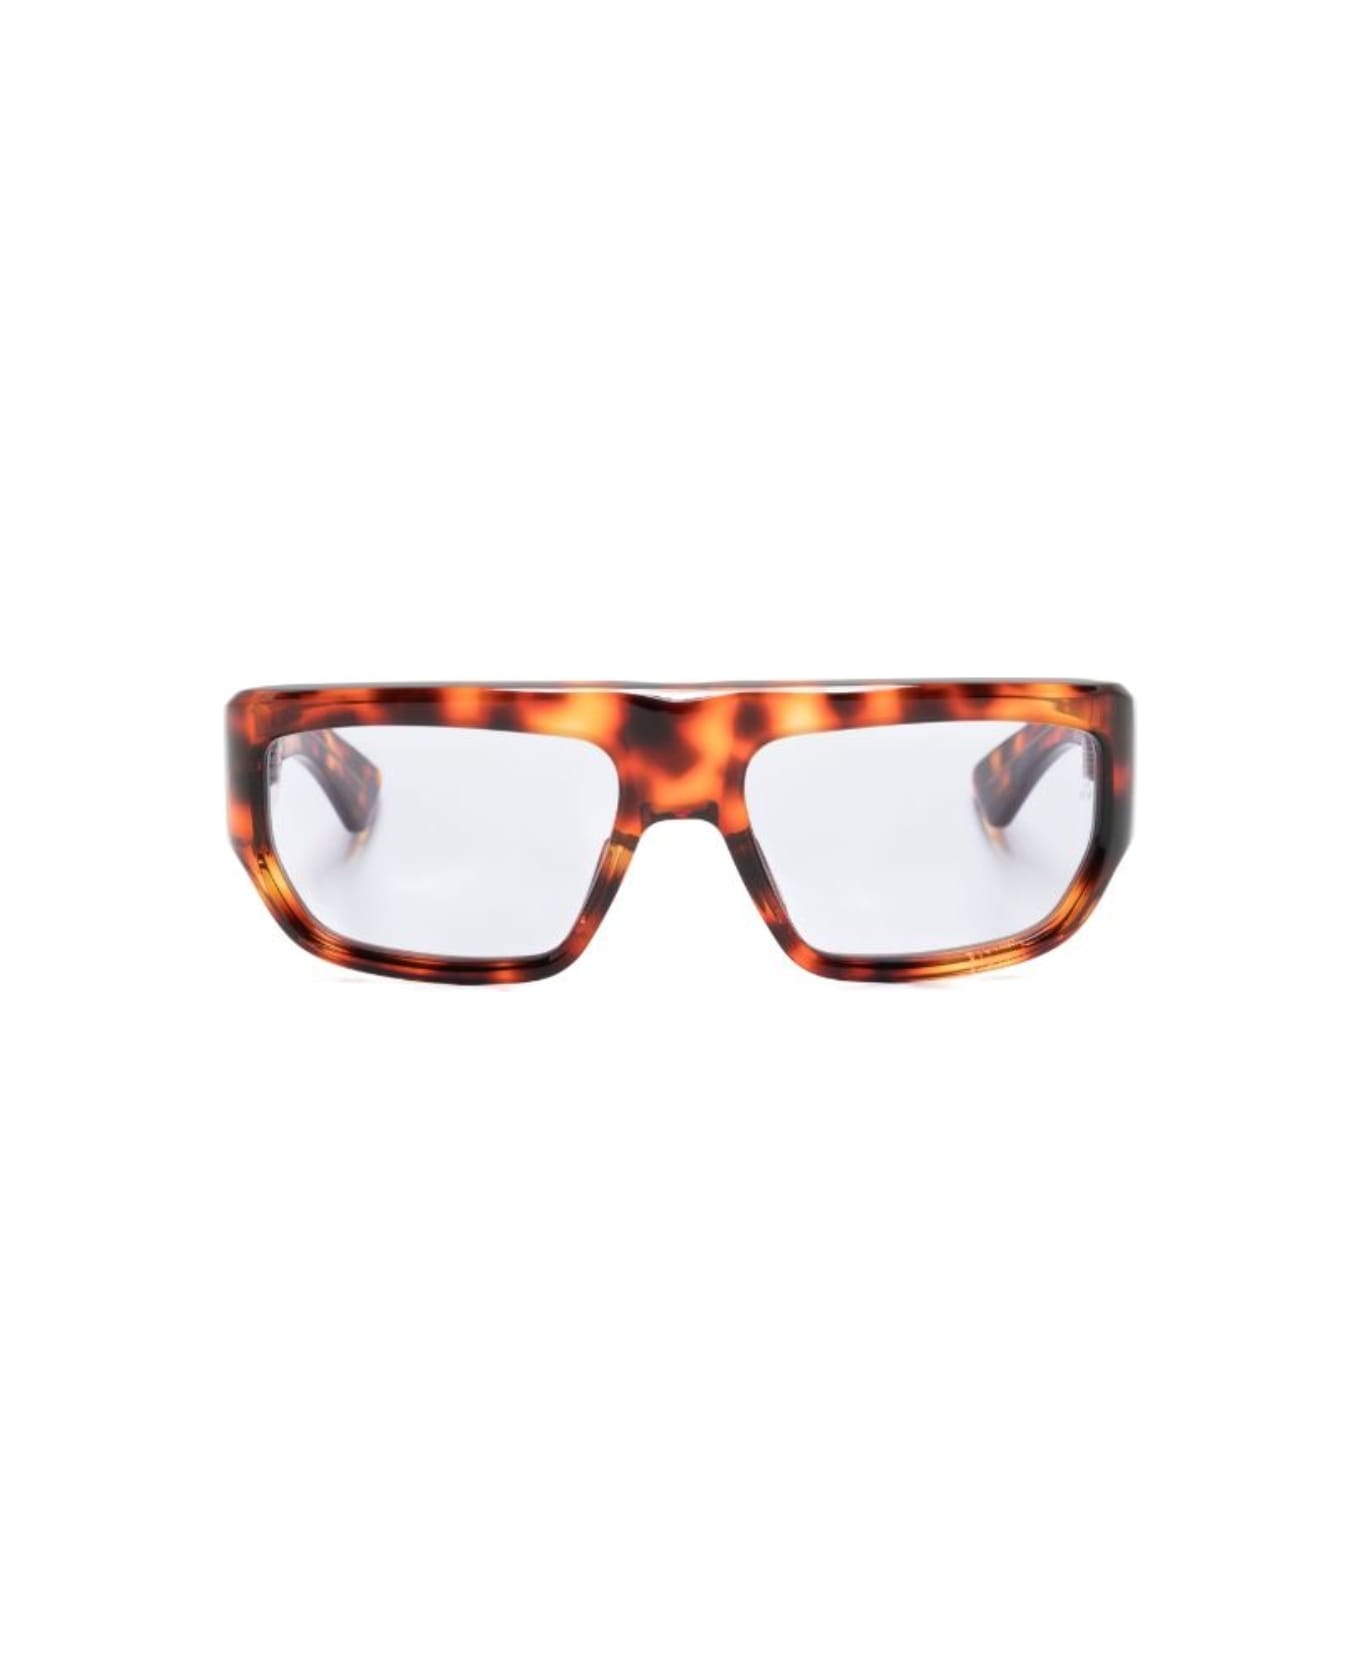 Jacques Marie Mage Vicious Sunglasses - Leopard